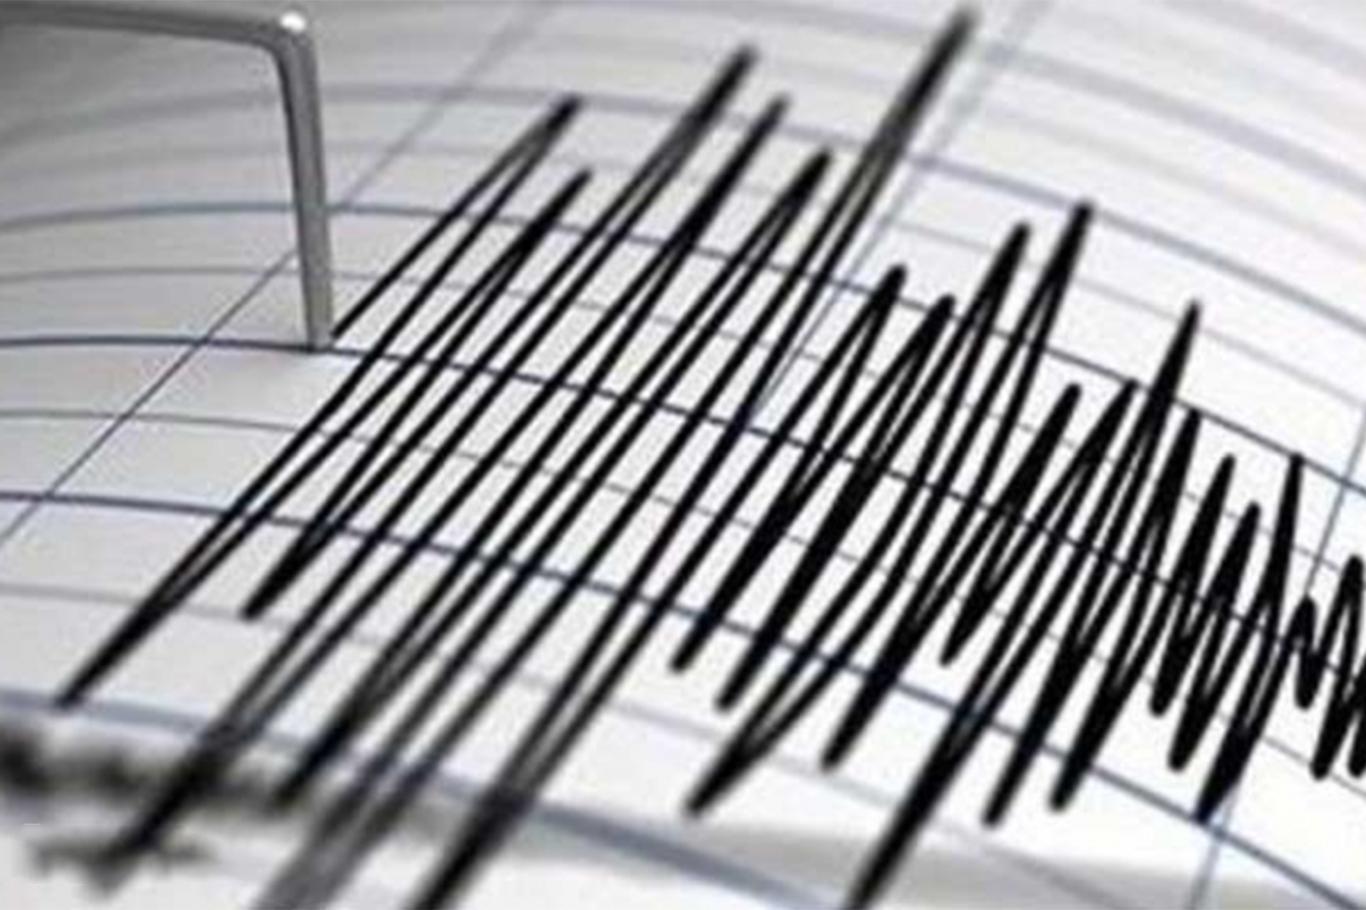 Ege Denizi'nde 4,1 büyüklüğünde deprem meydana geldi